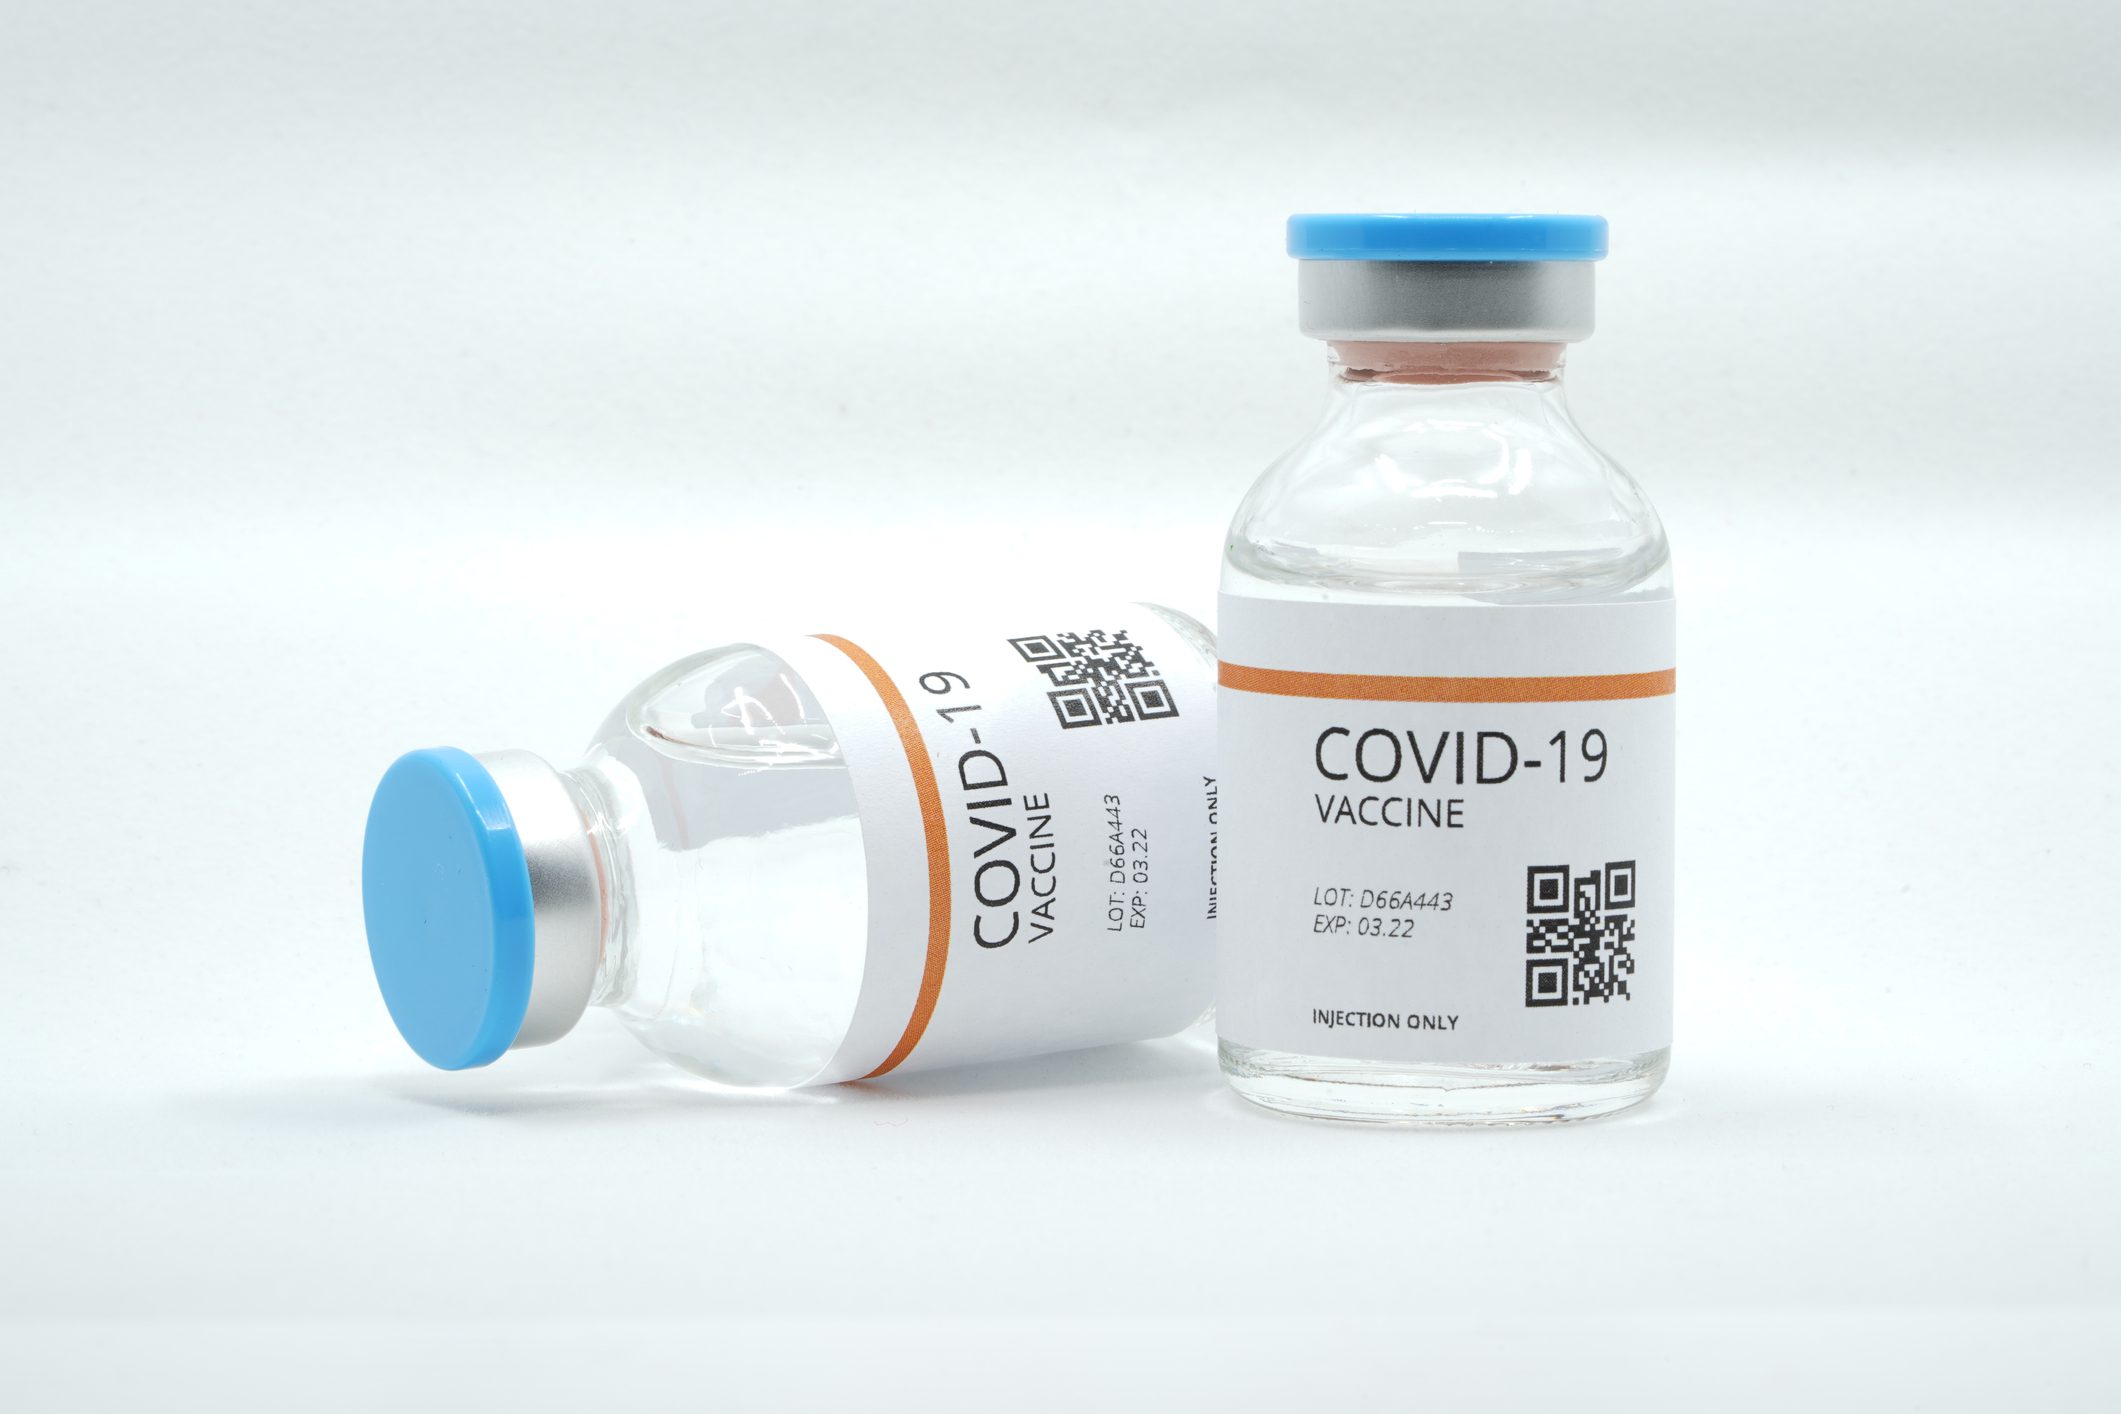 Corona covid-19 vaccine